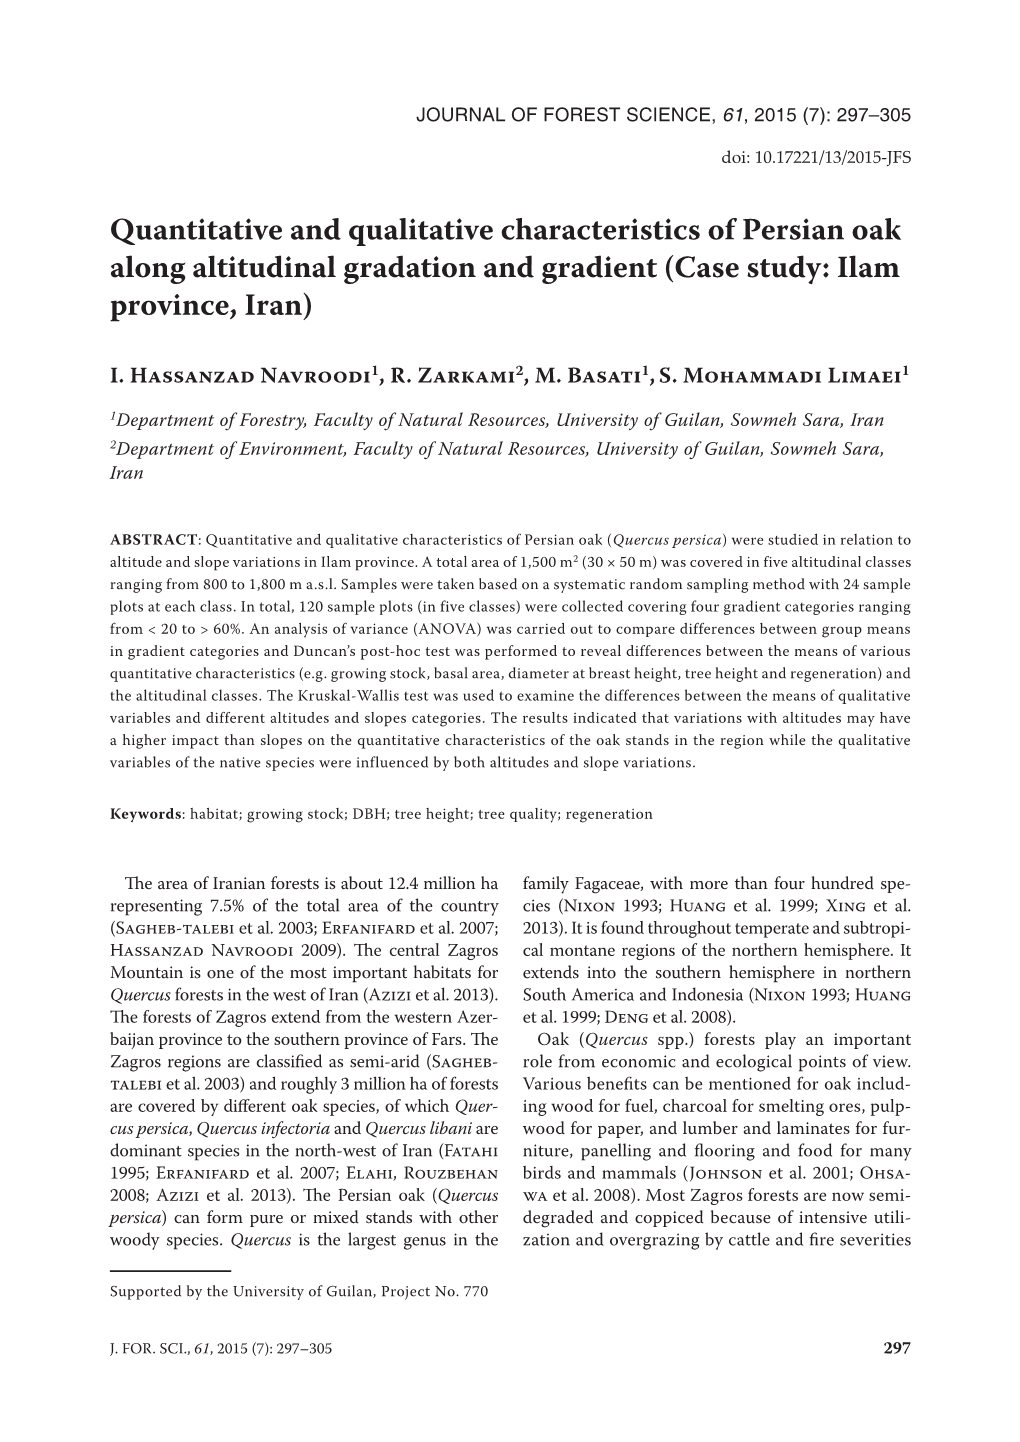 Quantitative and Qualitative Characteristics of Persian Oak Along Altitudinal Gradation and Gradient (Case Study: Ilam Province, Iran)